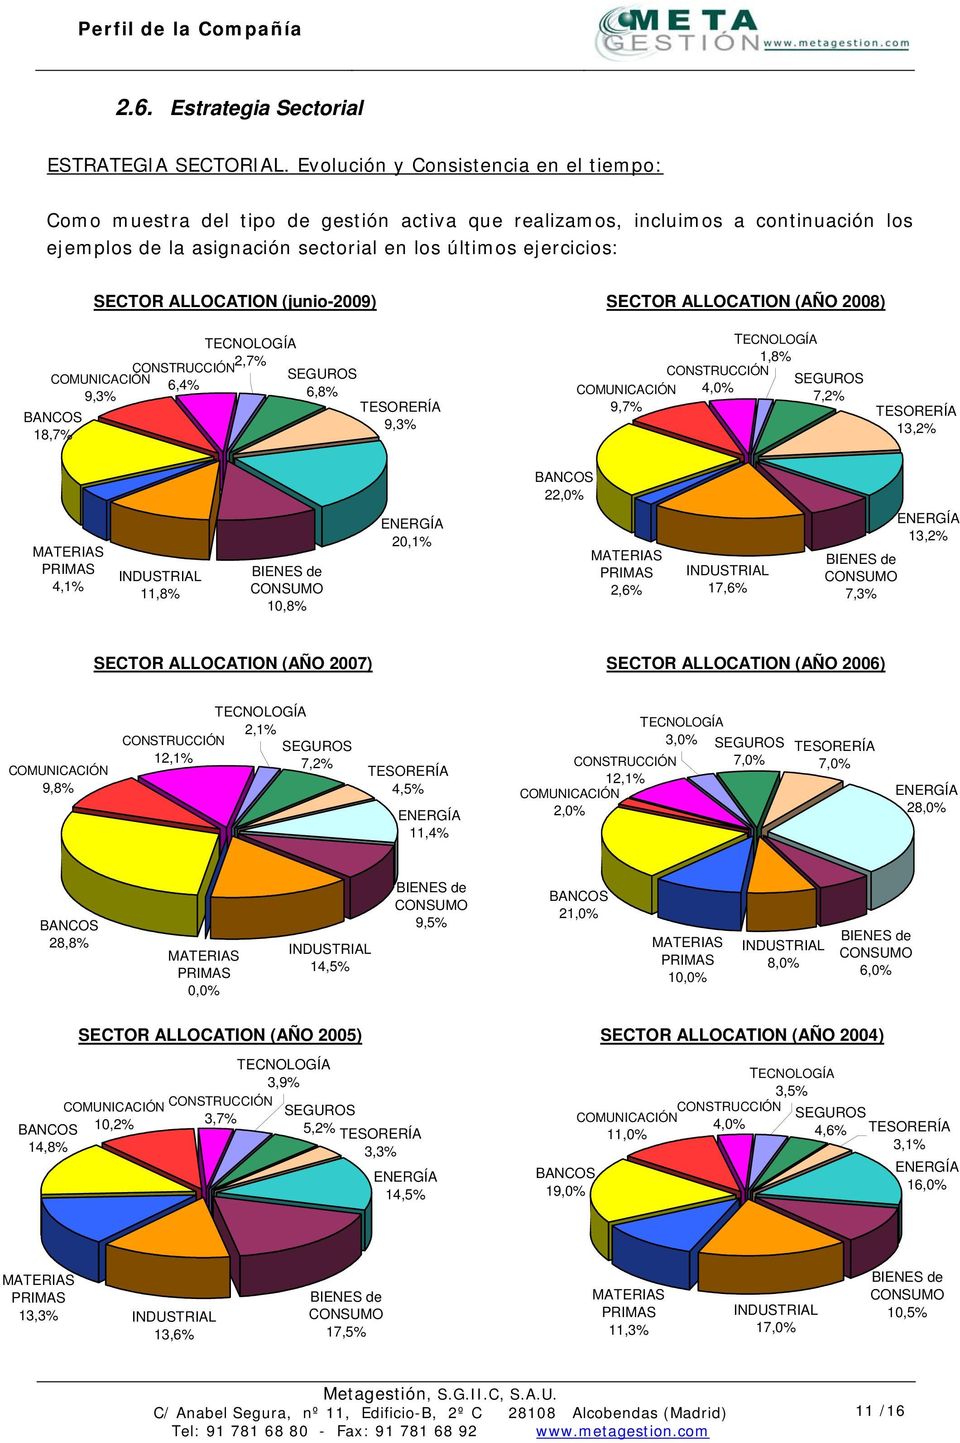 ALLOCATION (junio-2009) SECTOR ALLOCATION (AÑO 2008) COMUNICACIÓN 9,3% BANCOS 18,7% TECNOLOGÍA 2,7% CONSTRUCCIÓN 6,4% SEGUROS 6,8% TESORERÍA 9,3% TECNOLOGÍA 1,8% CONSTRUCCIÓN SEGUROS COMUNICACIÓN